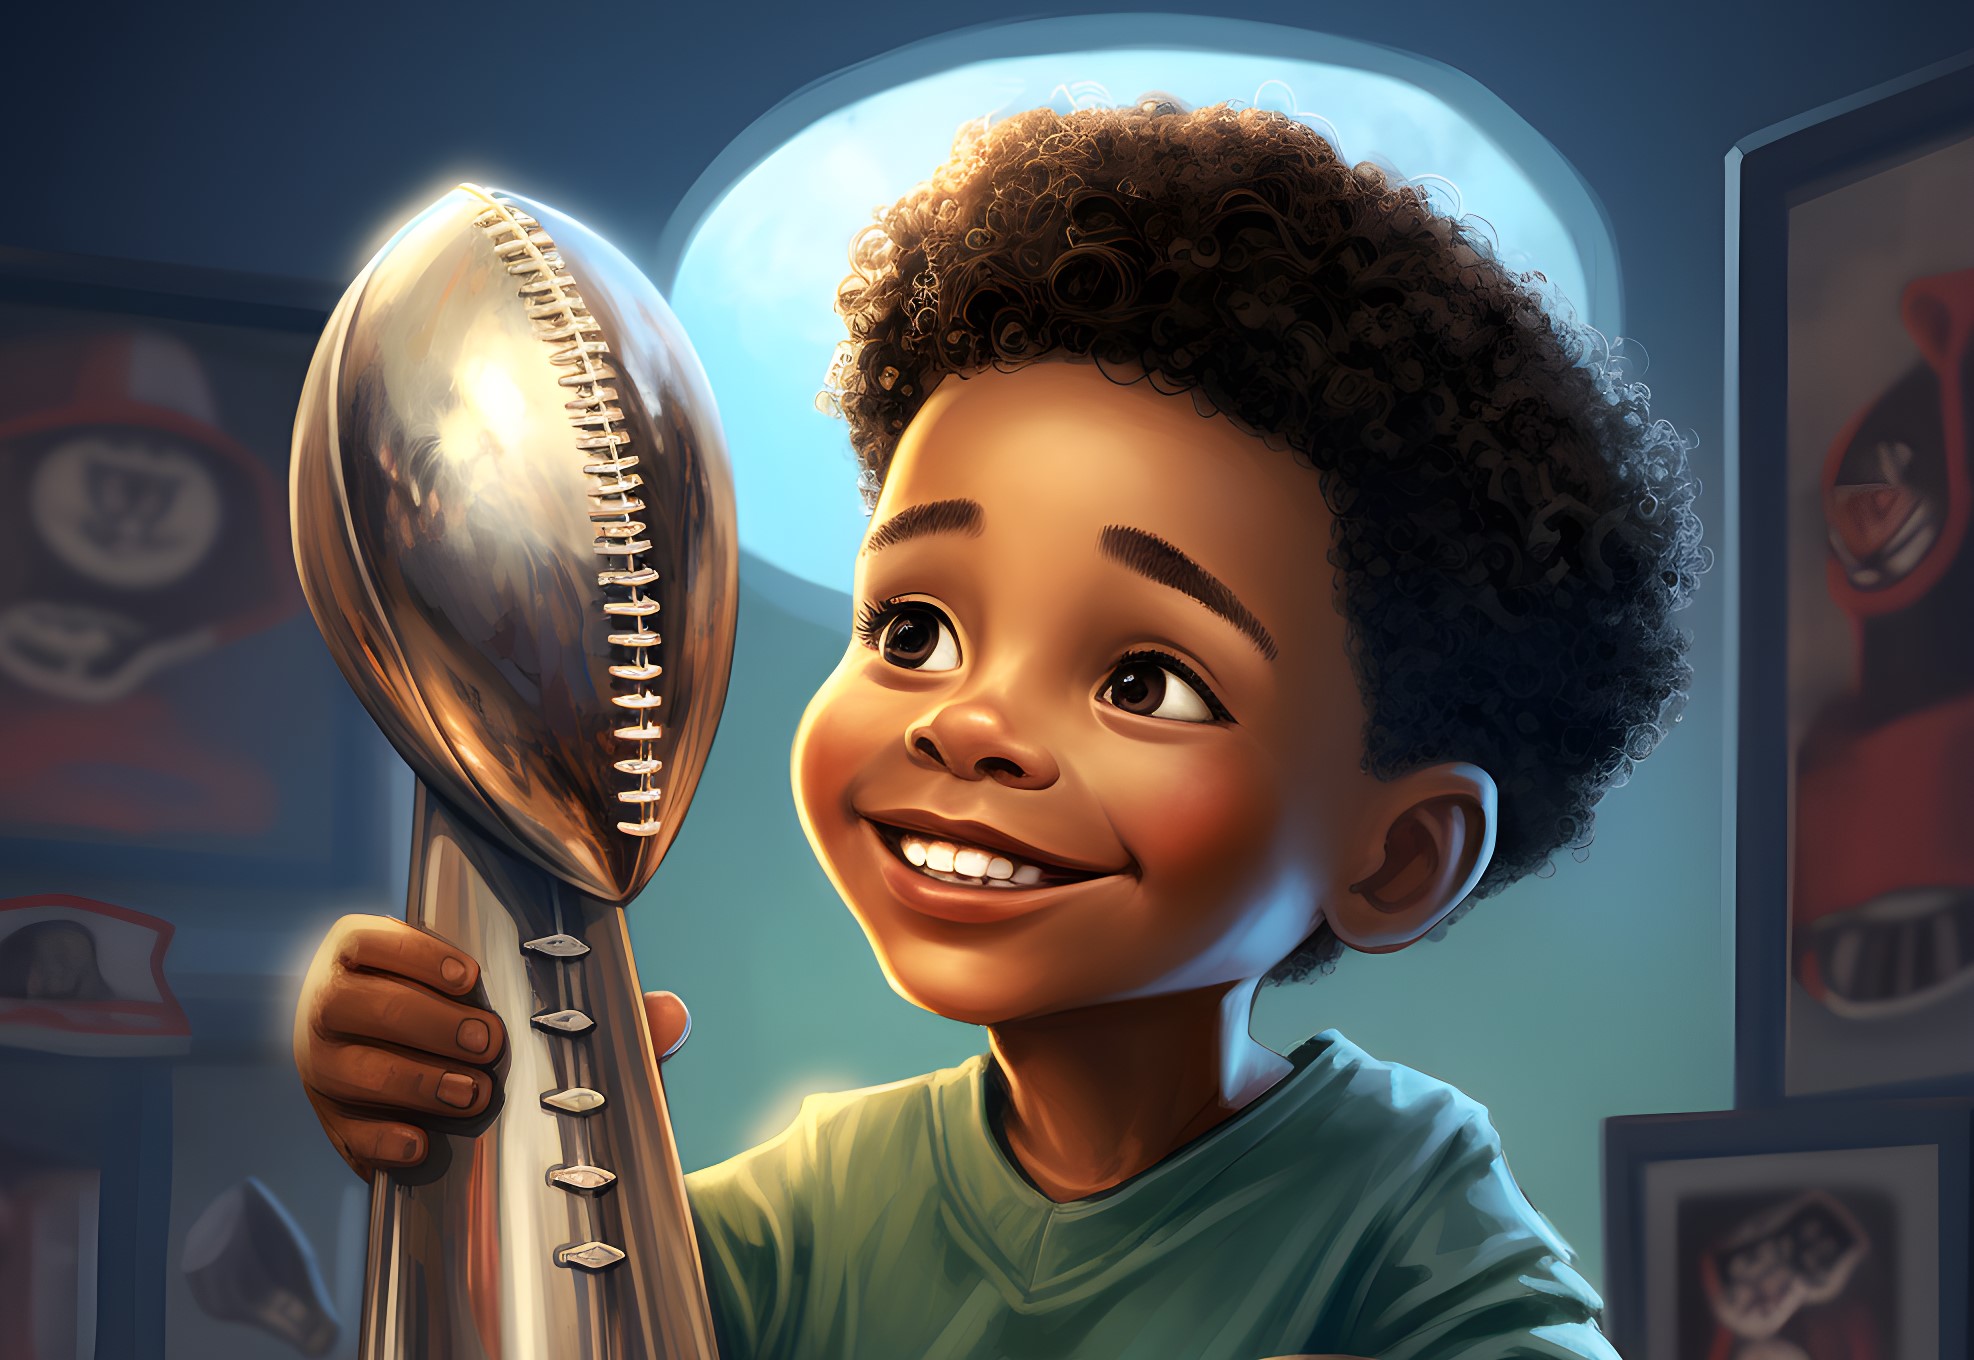 FootballR - NFL Playoffs - Ein kleiner Junge zeigt stolz seine Footballmeisterschaftstrophäe.